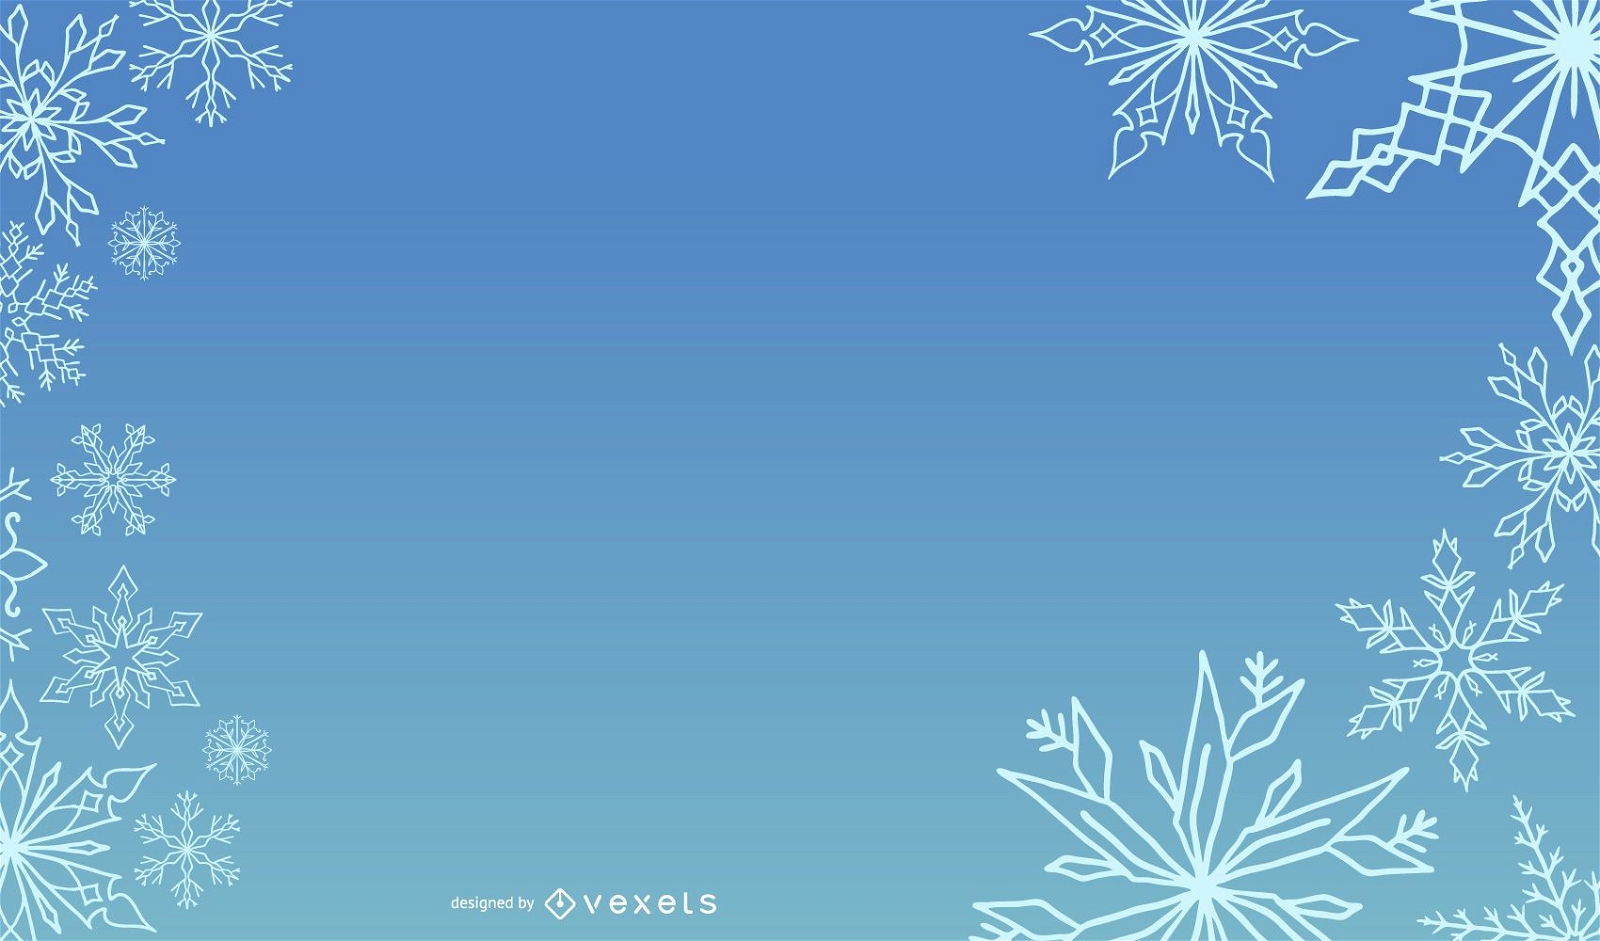 Blaues schneebedecktes Schablonen-Weihnachtslayout